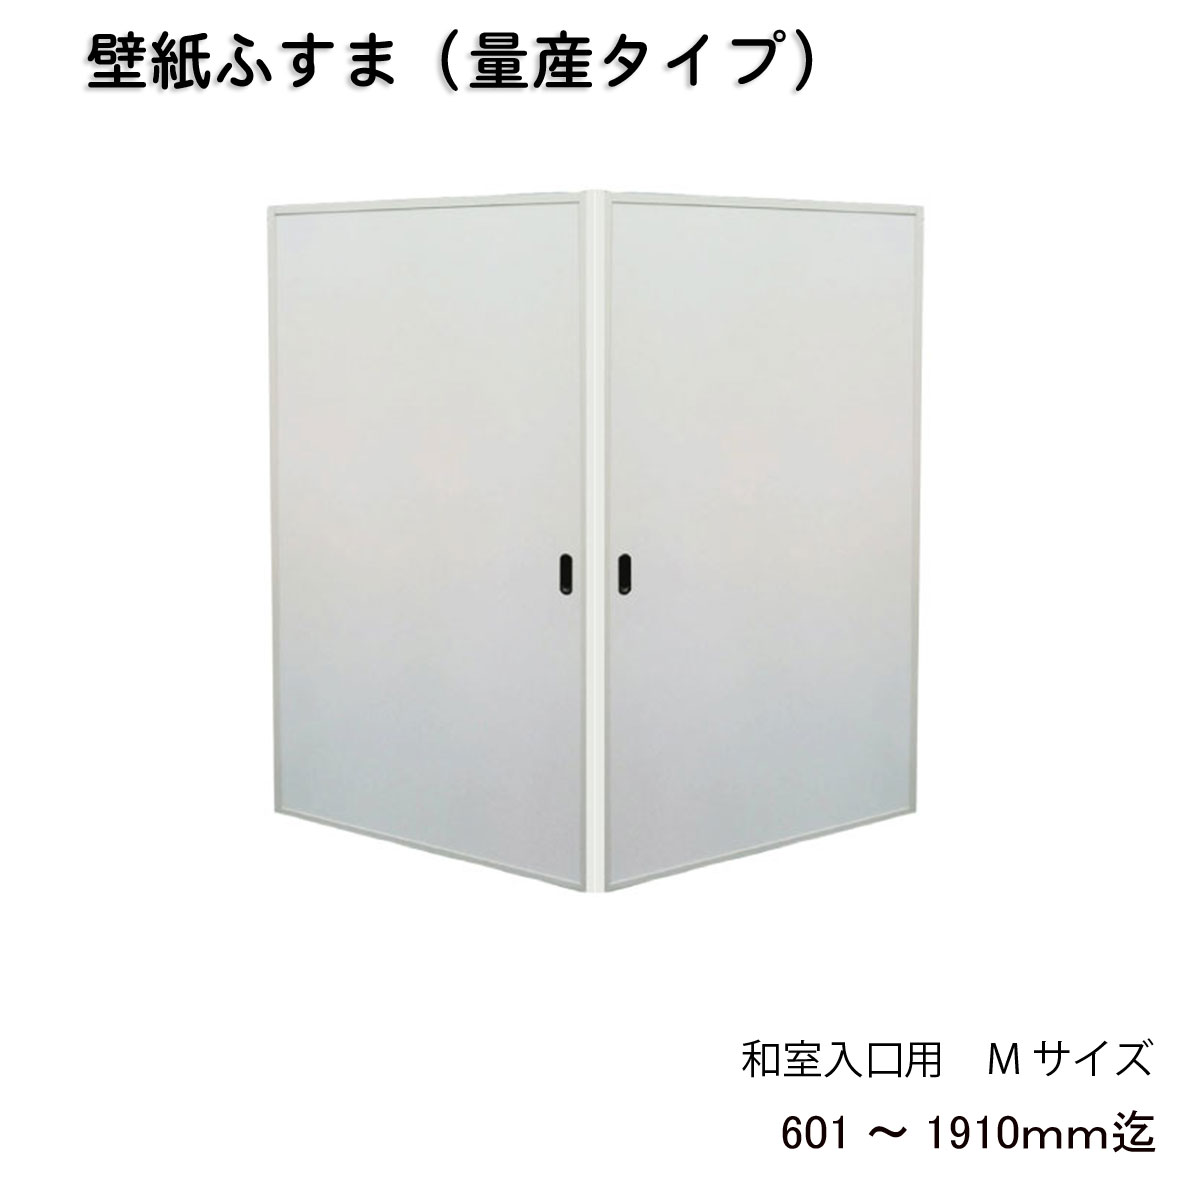 Majikiriya 墻紙隔扇 和式房間入口用 到完成h601 1910mm W920mm 1